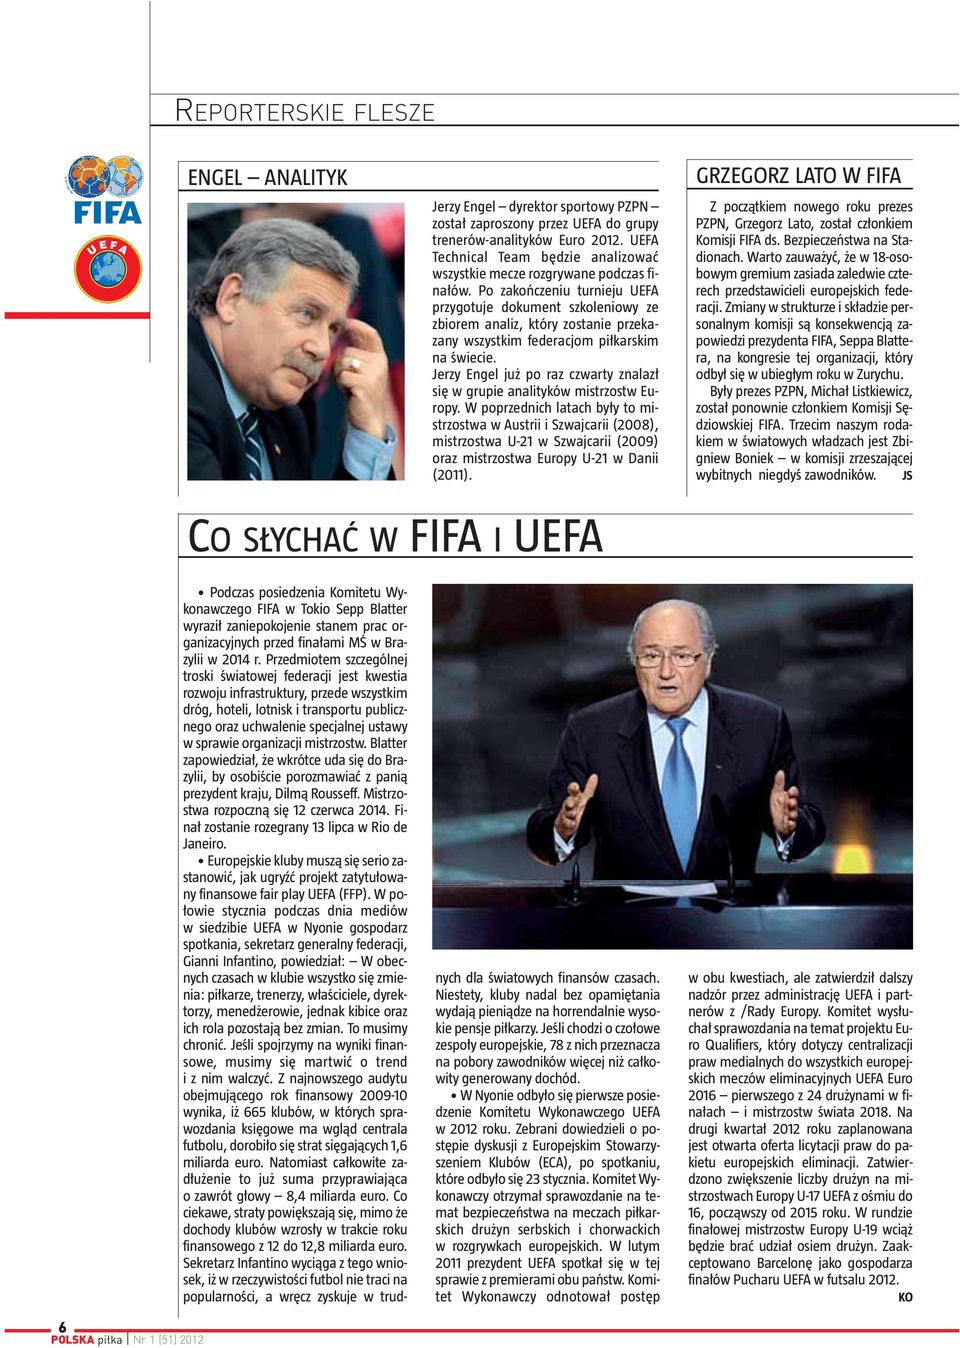 Po zakończeniu turnieju UEFA przygotuje dokument szkoleniowy ze zbiorem analiz, który zostanie przekazany wszystkim federacjom piłkarskim na świecie.